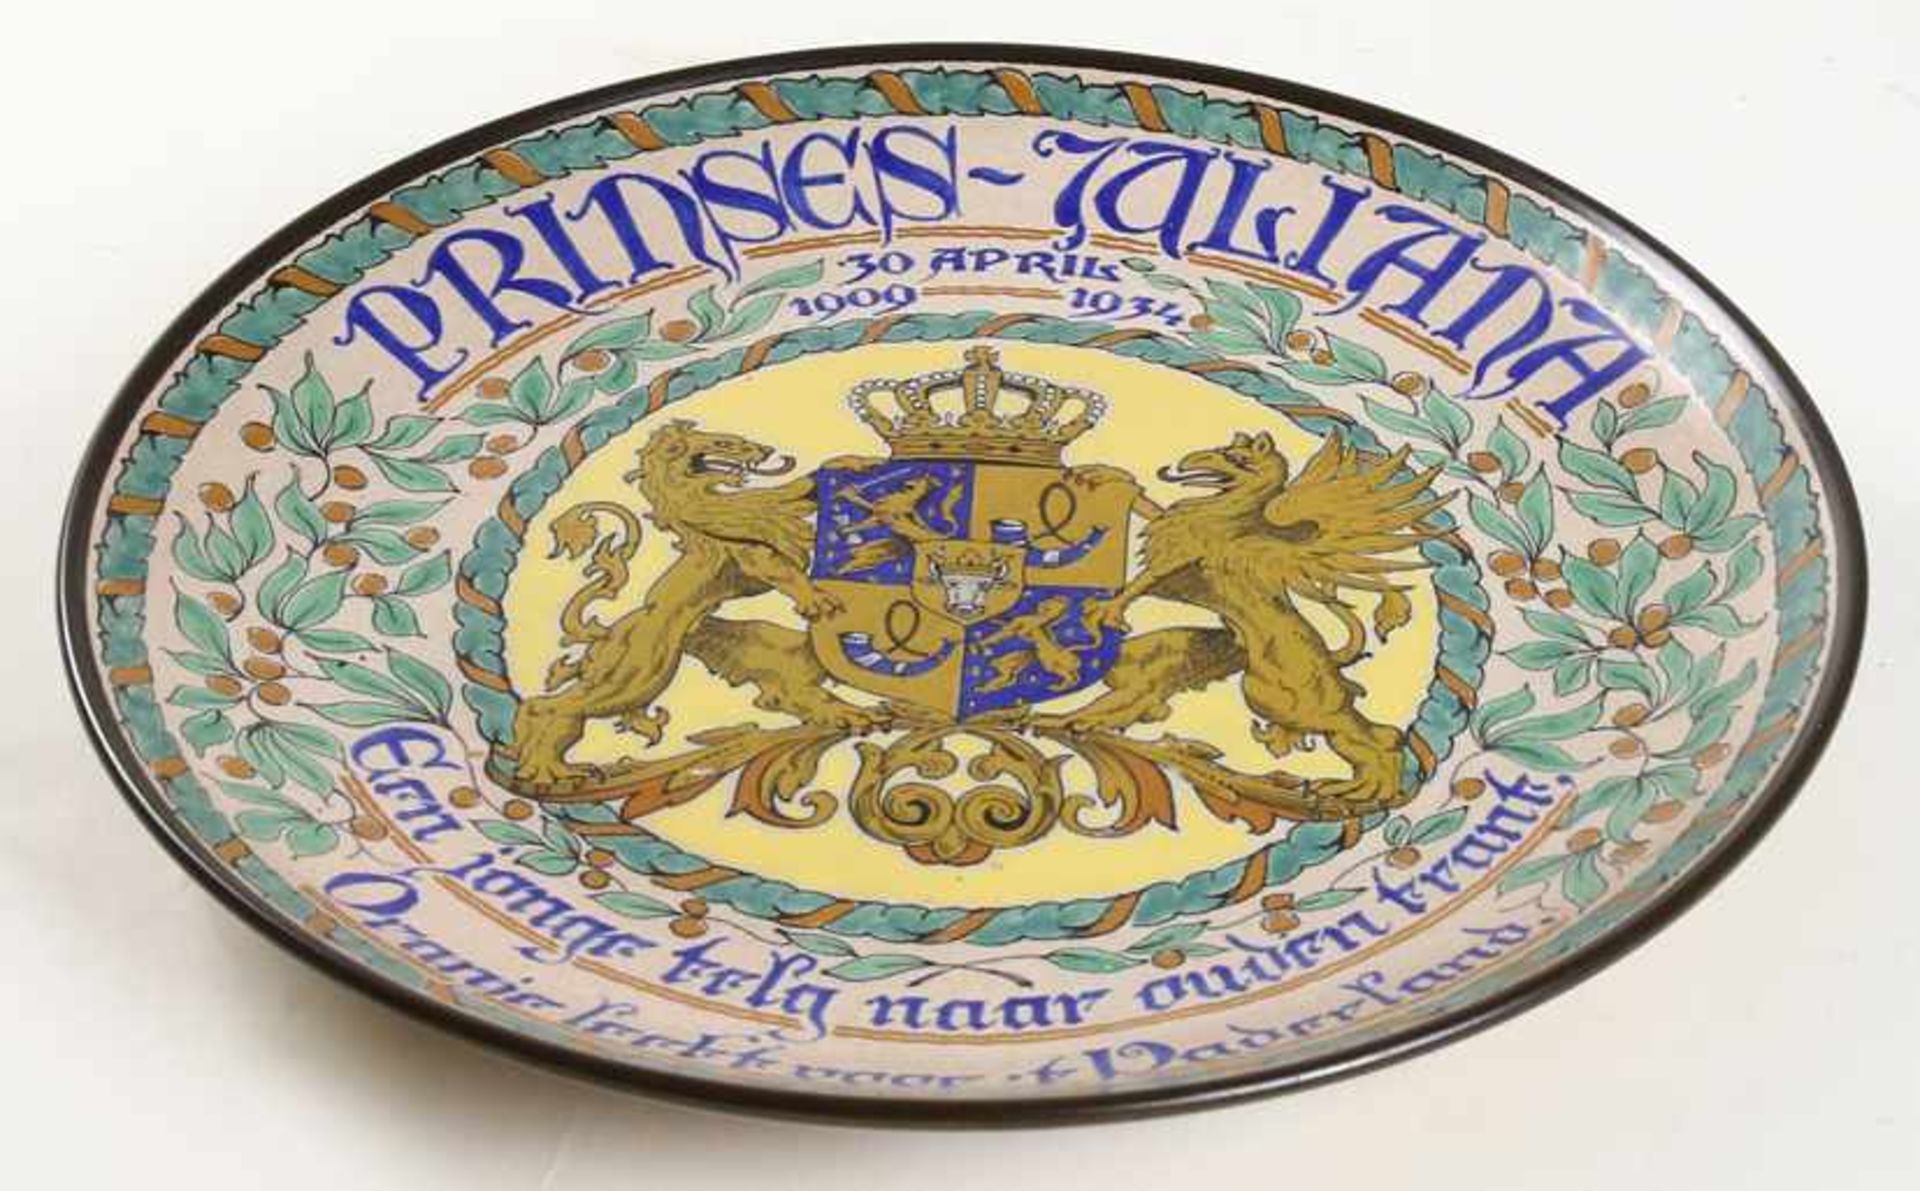 Plateel bord, uitgegeven ter gelegenheid van de 35e verjaardag van prinses Juliana, zgn. '